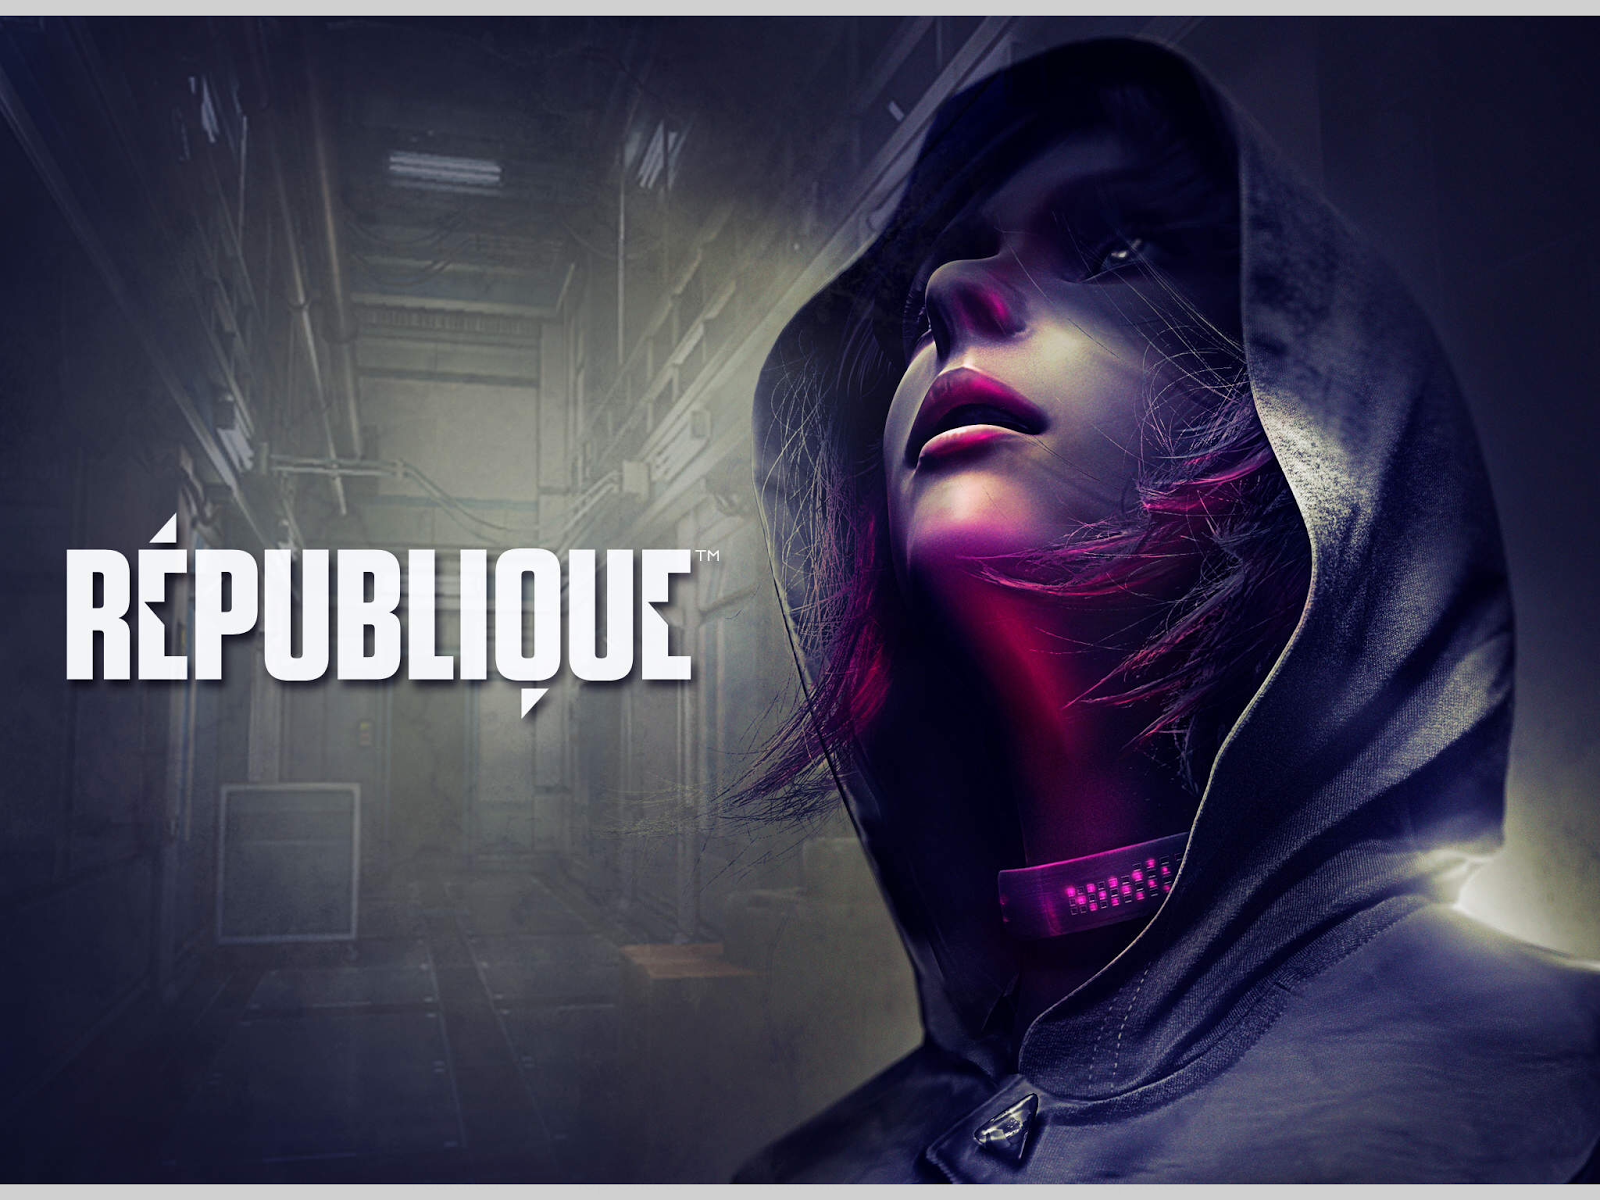 République v6.1 APK + OBB DATA - Android Original Game Review